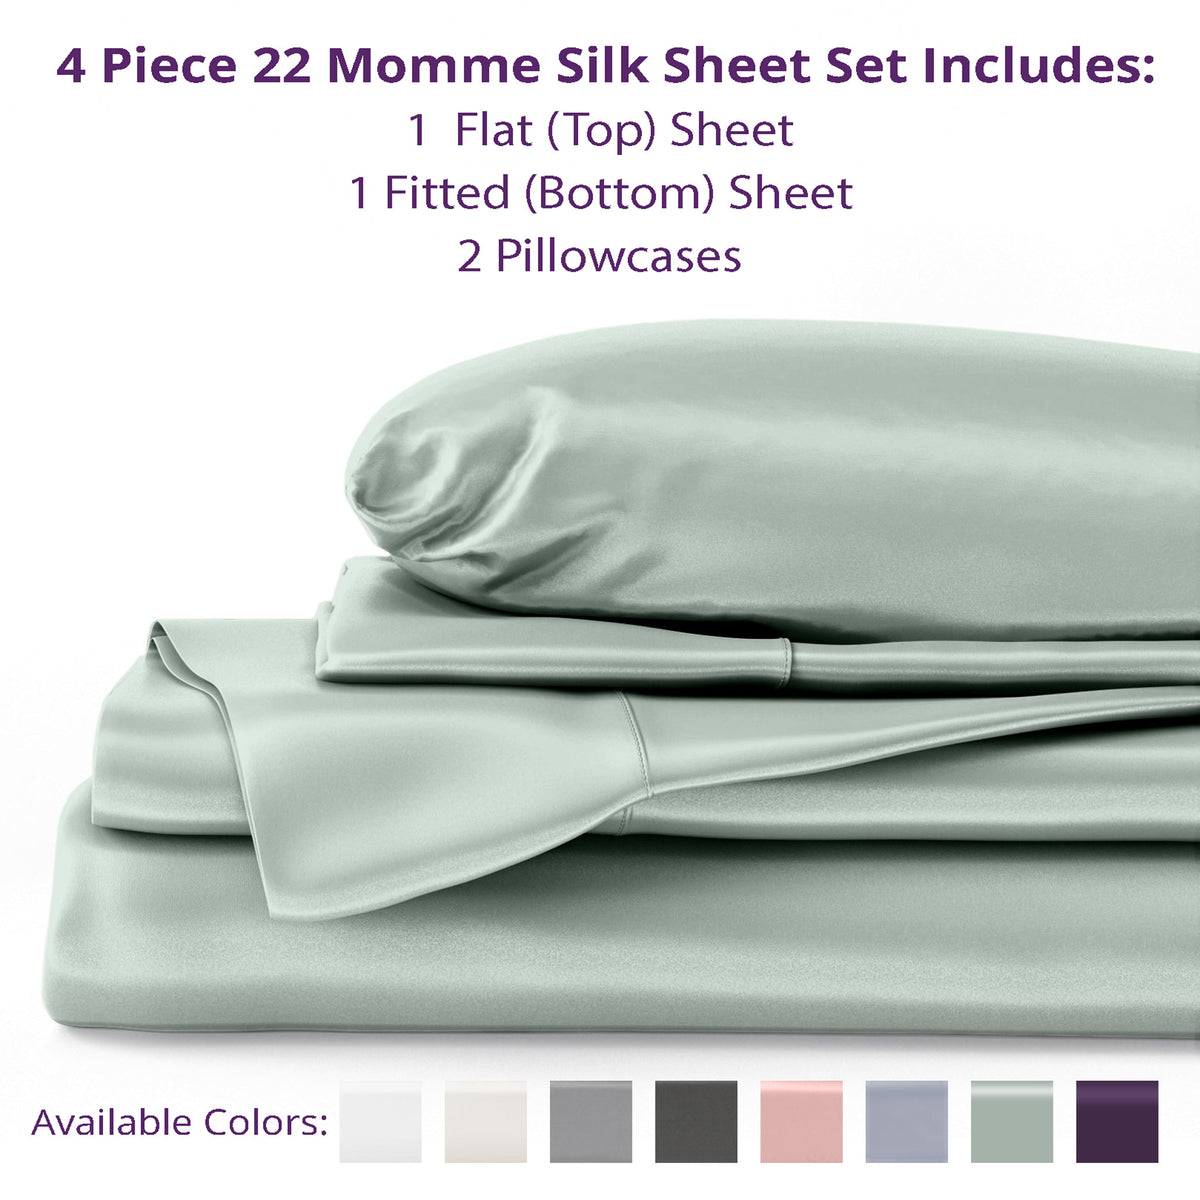 22 Momme Silk Sheet Sets - Queen